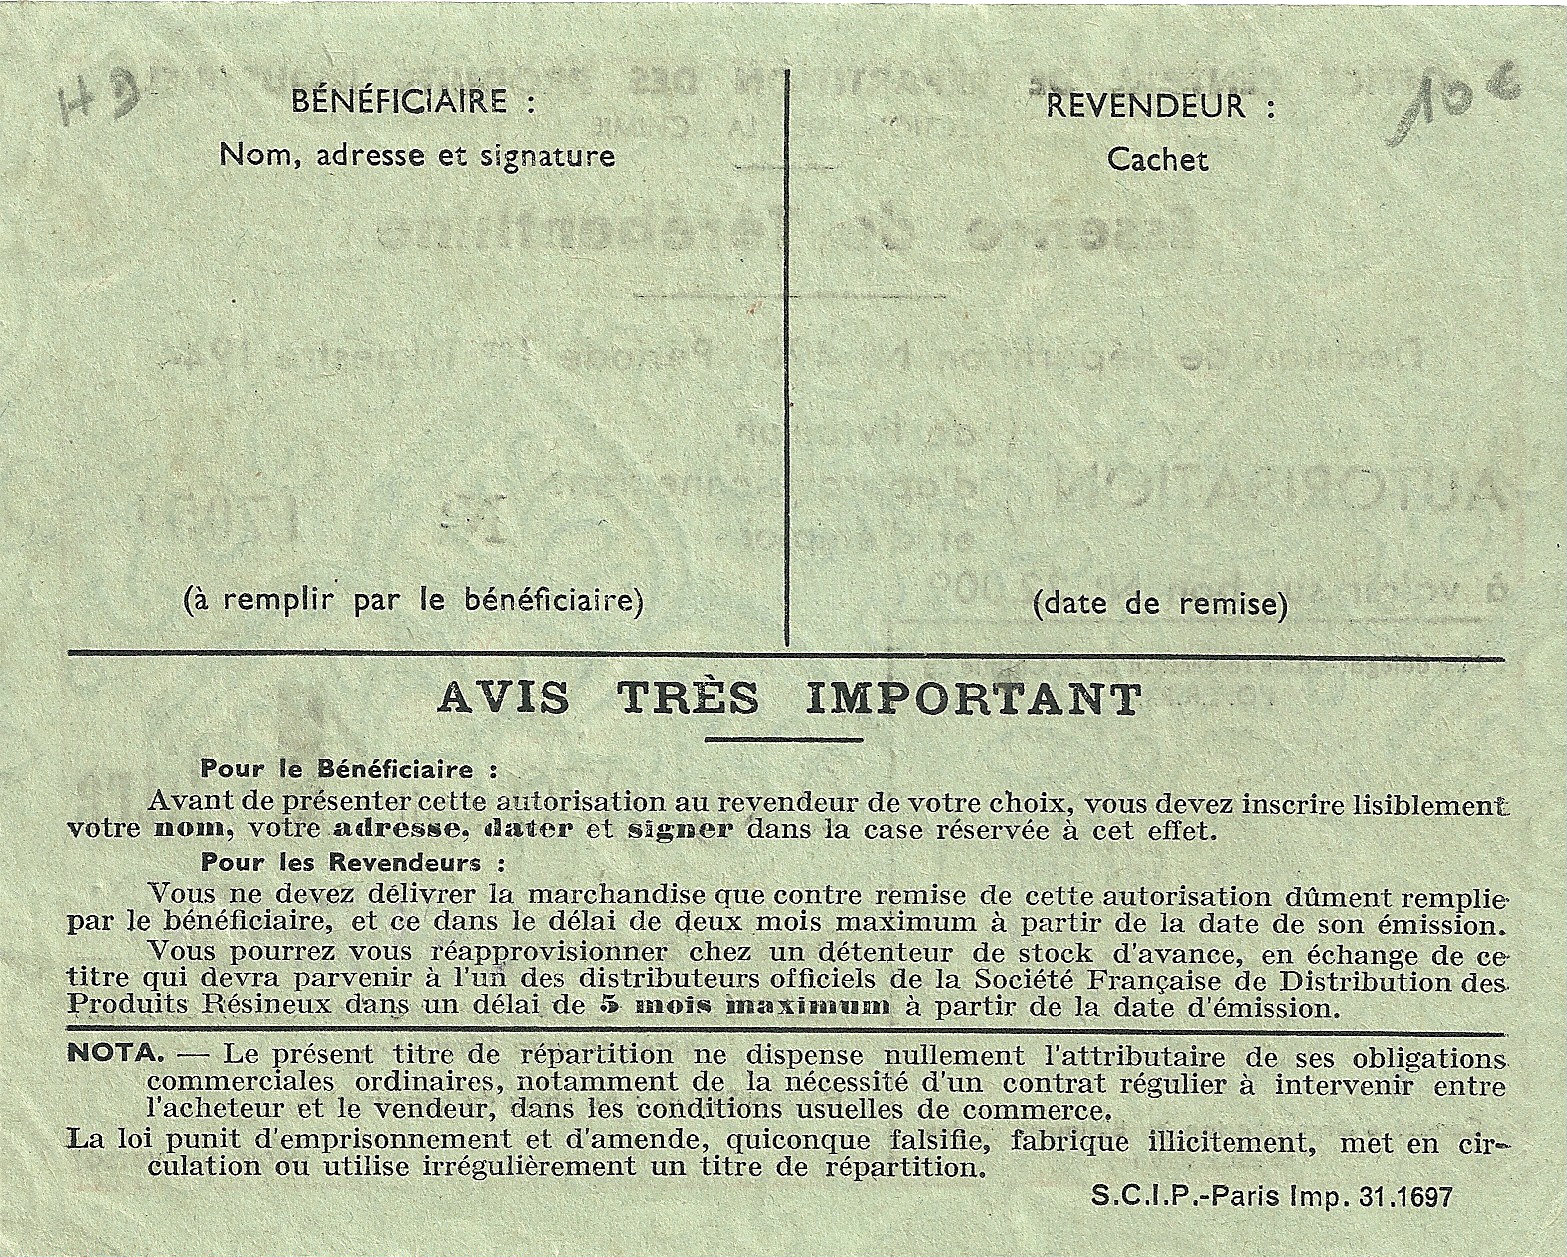 SECTION DE LA CHIMIE - Essence de Térébenthine - 0 kg. 870 soit 1 litre - 17 054 - DOS